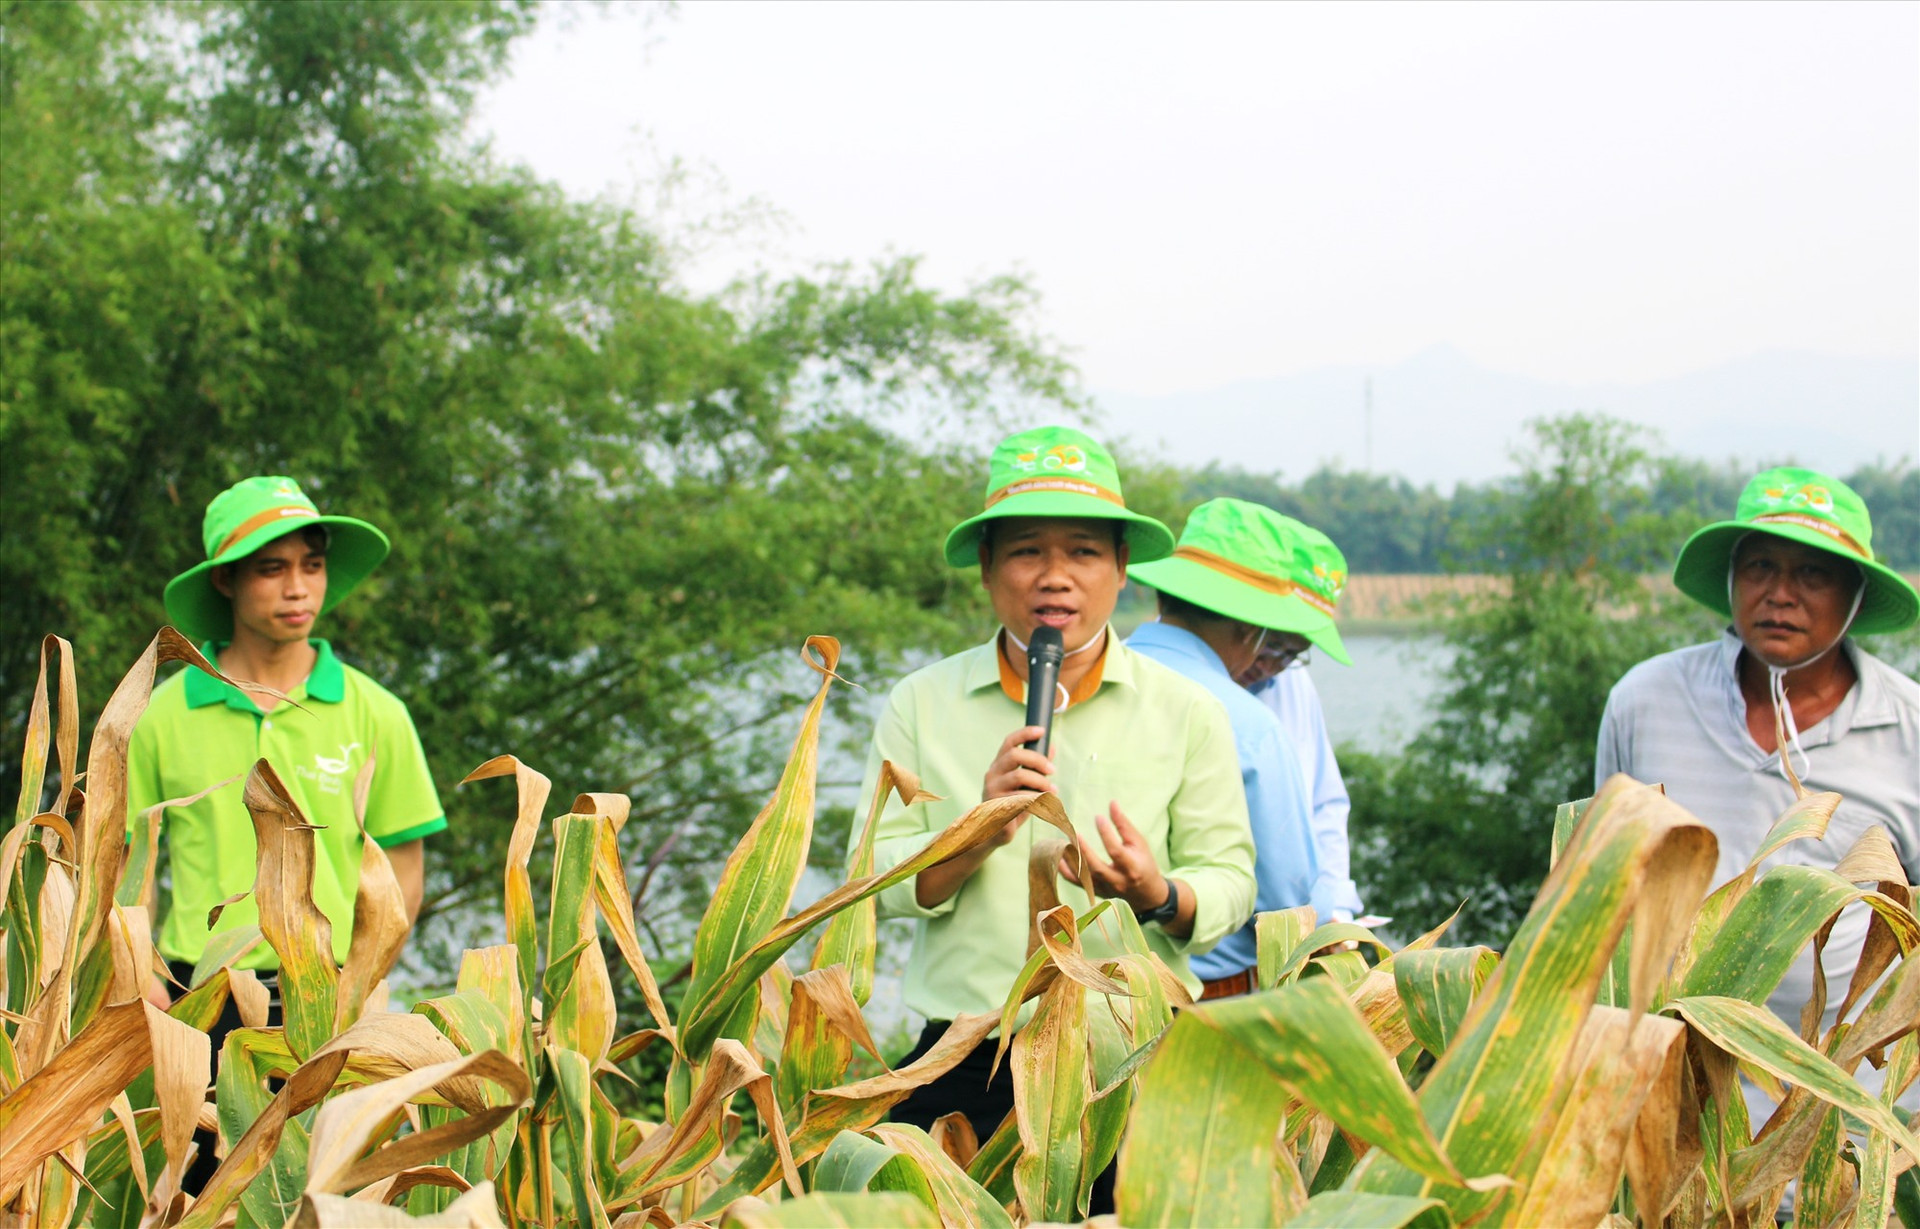 Ông Triệu Tấn Phú – Giám đốc Công ty TNHH ThaiBinh Seed miền Trung - Tây Nguyên (đứng giữa) thông tin về quá trình thực hiện mô hình liên kết sản xuất.   Ảnh: PV